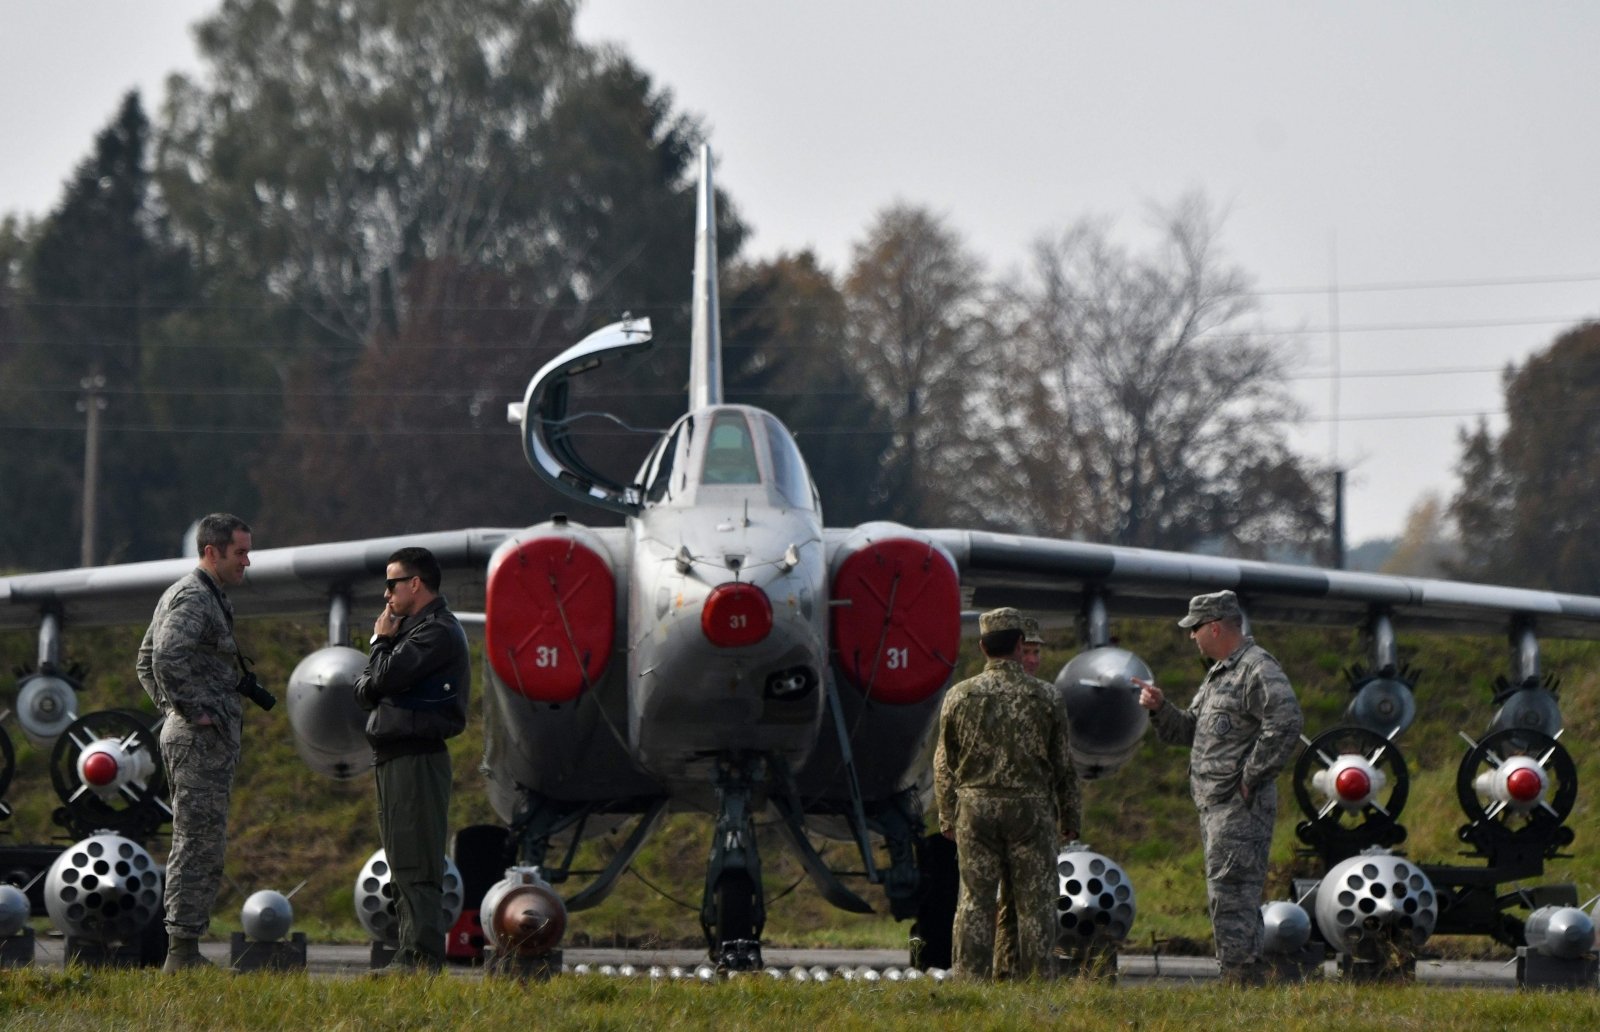 Z Polski – niejednoznaczny przekaz o samolotach bojowych dla Ukrainy